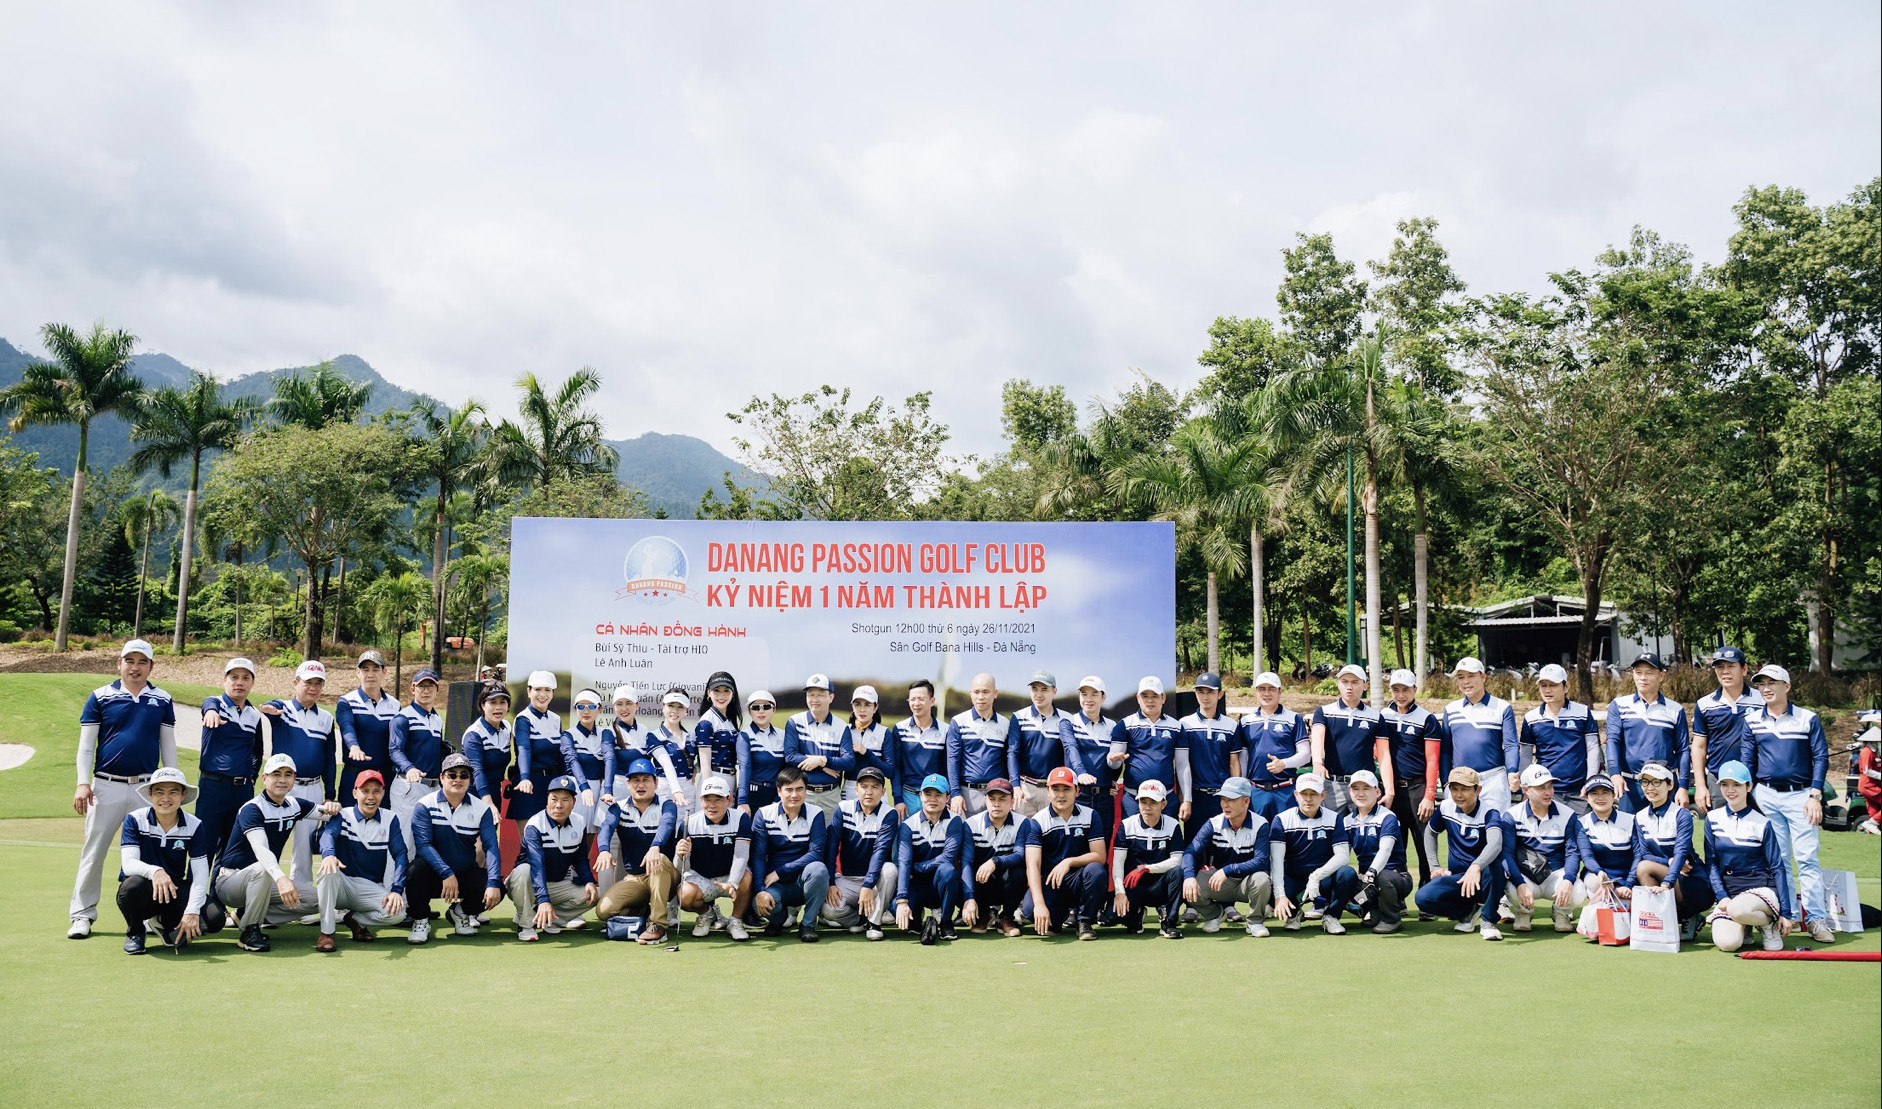 CLB Passion Golf Đà Nẵng kỷ niệm thành lập 1 năm tại sân Golf Bà Nà